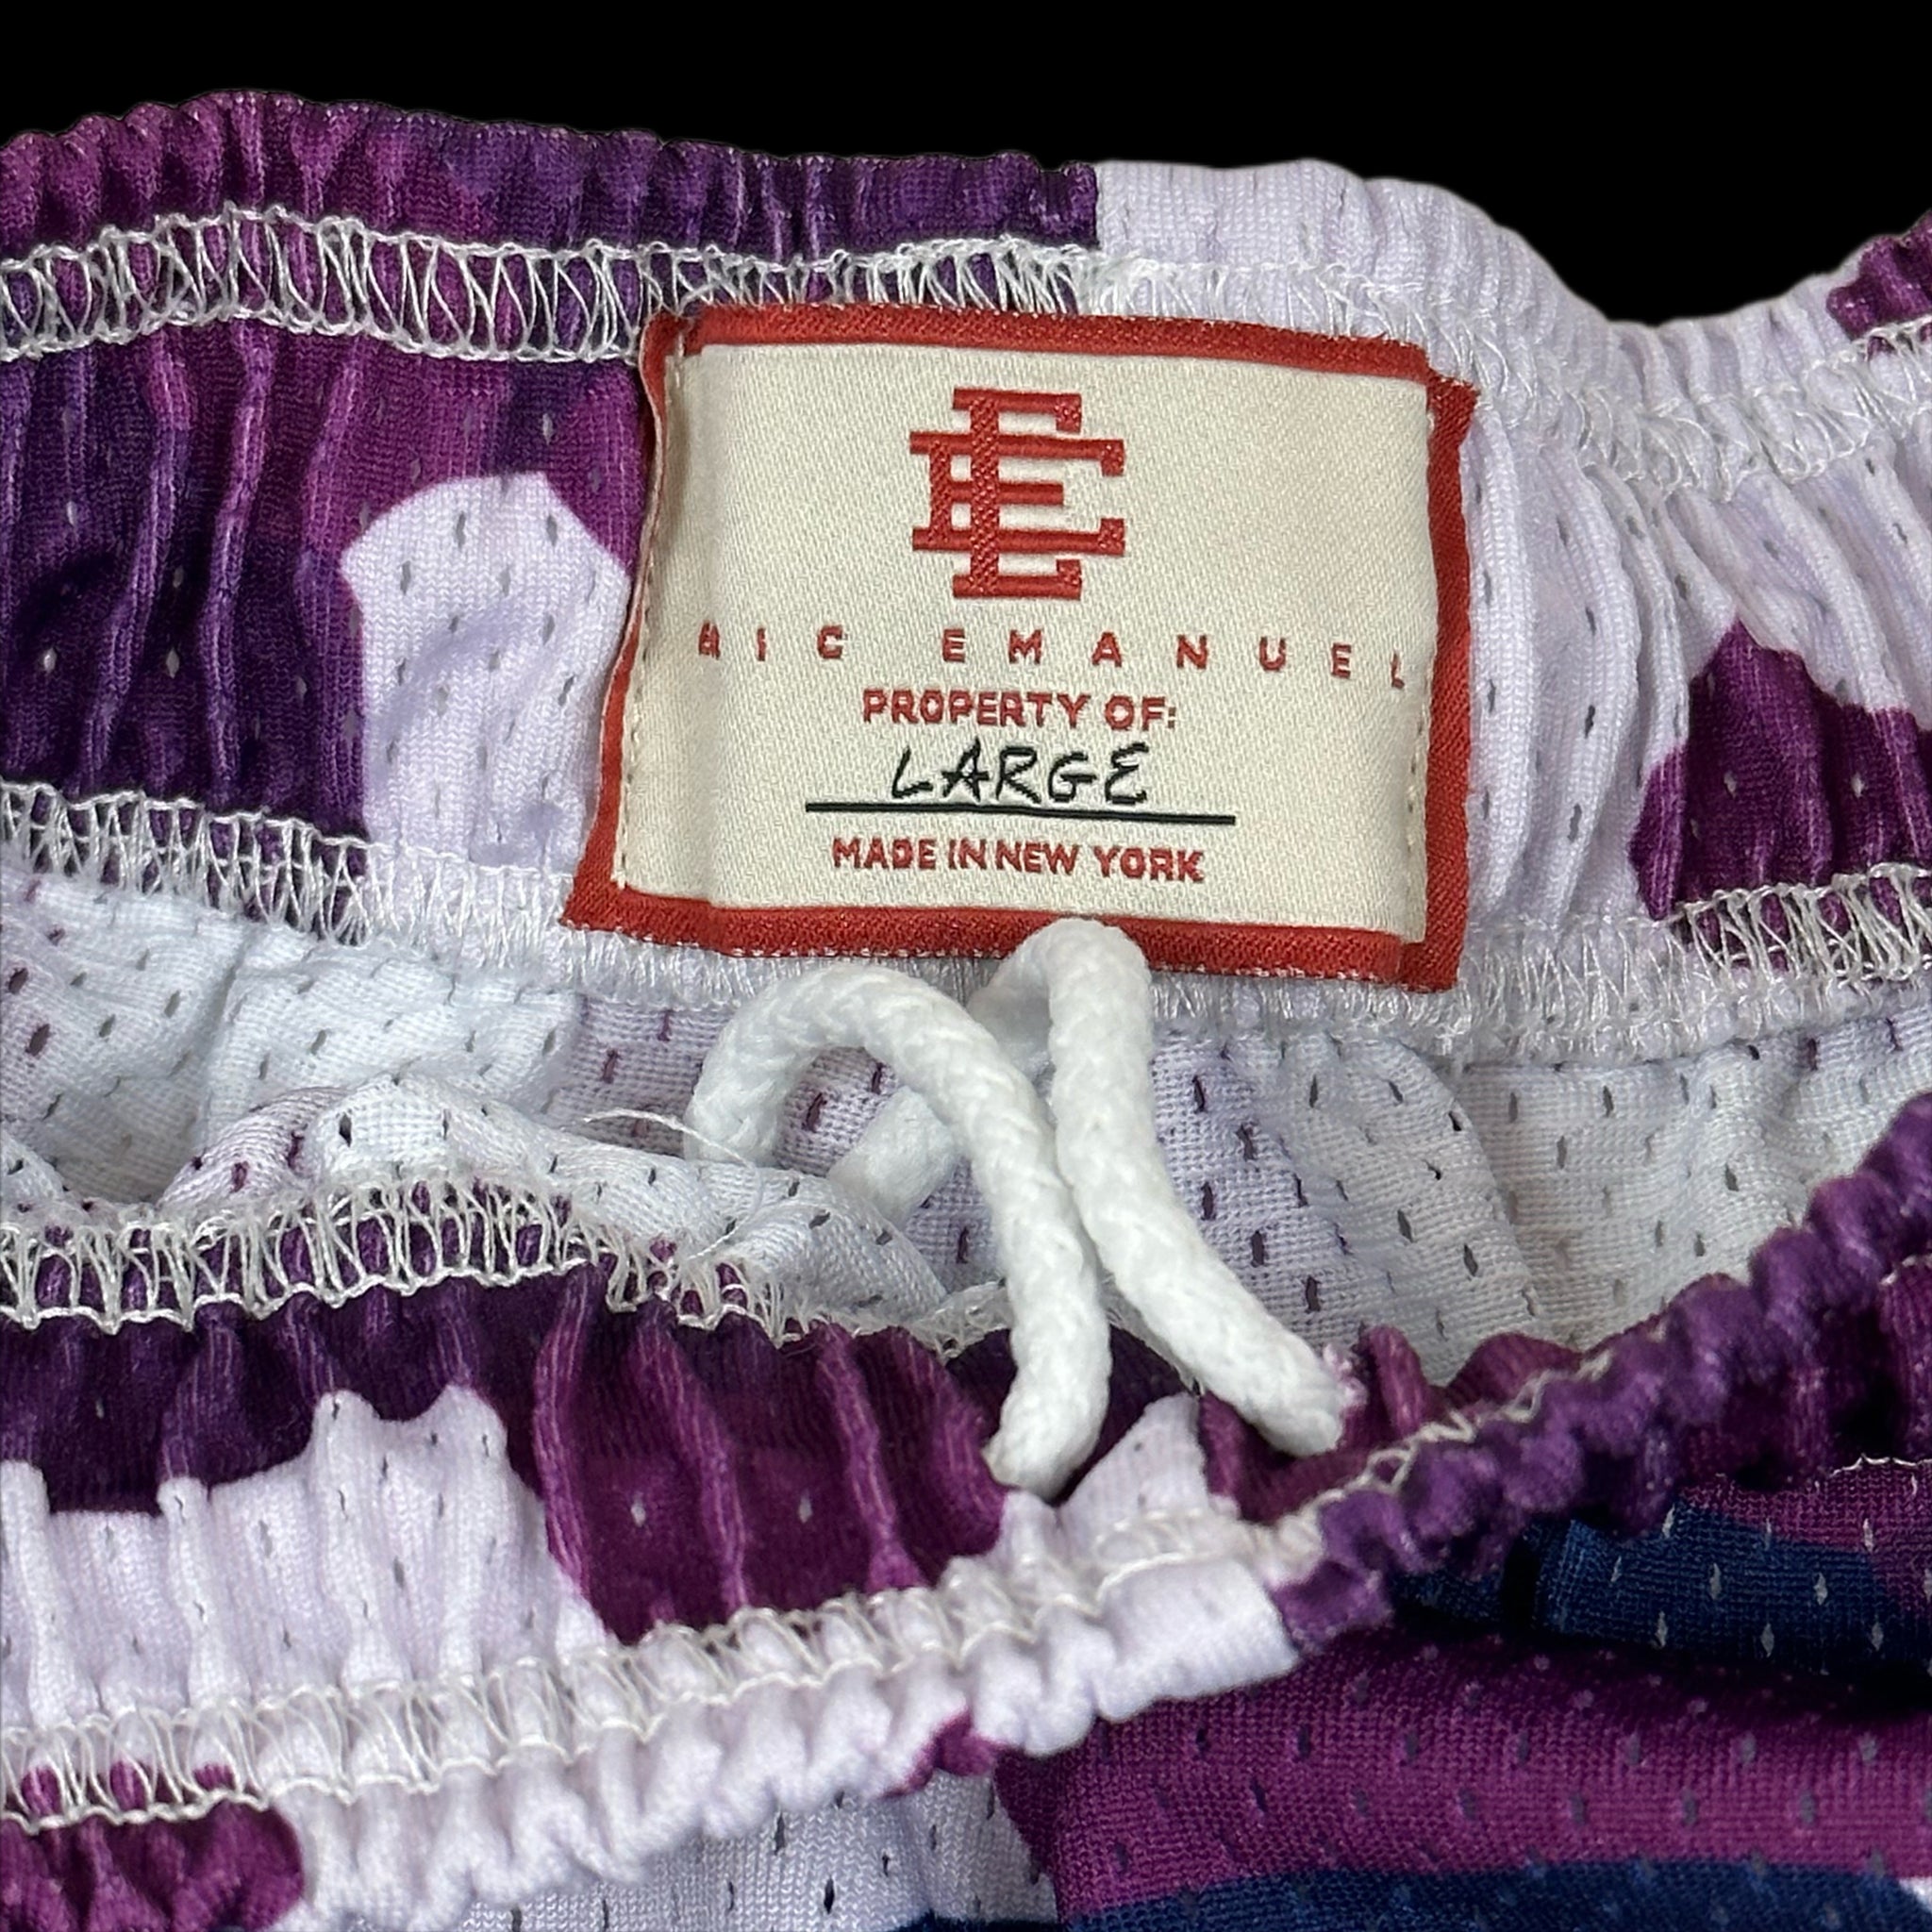 eric emanuel purple camo mesh shorts – change clothes